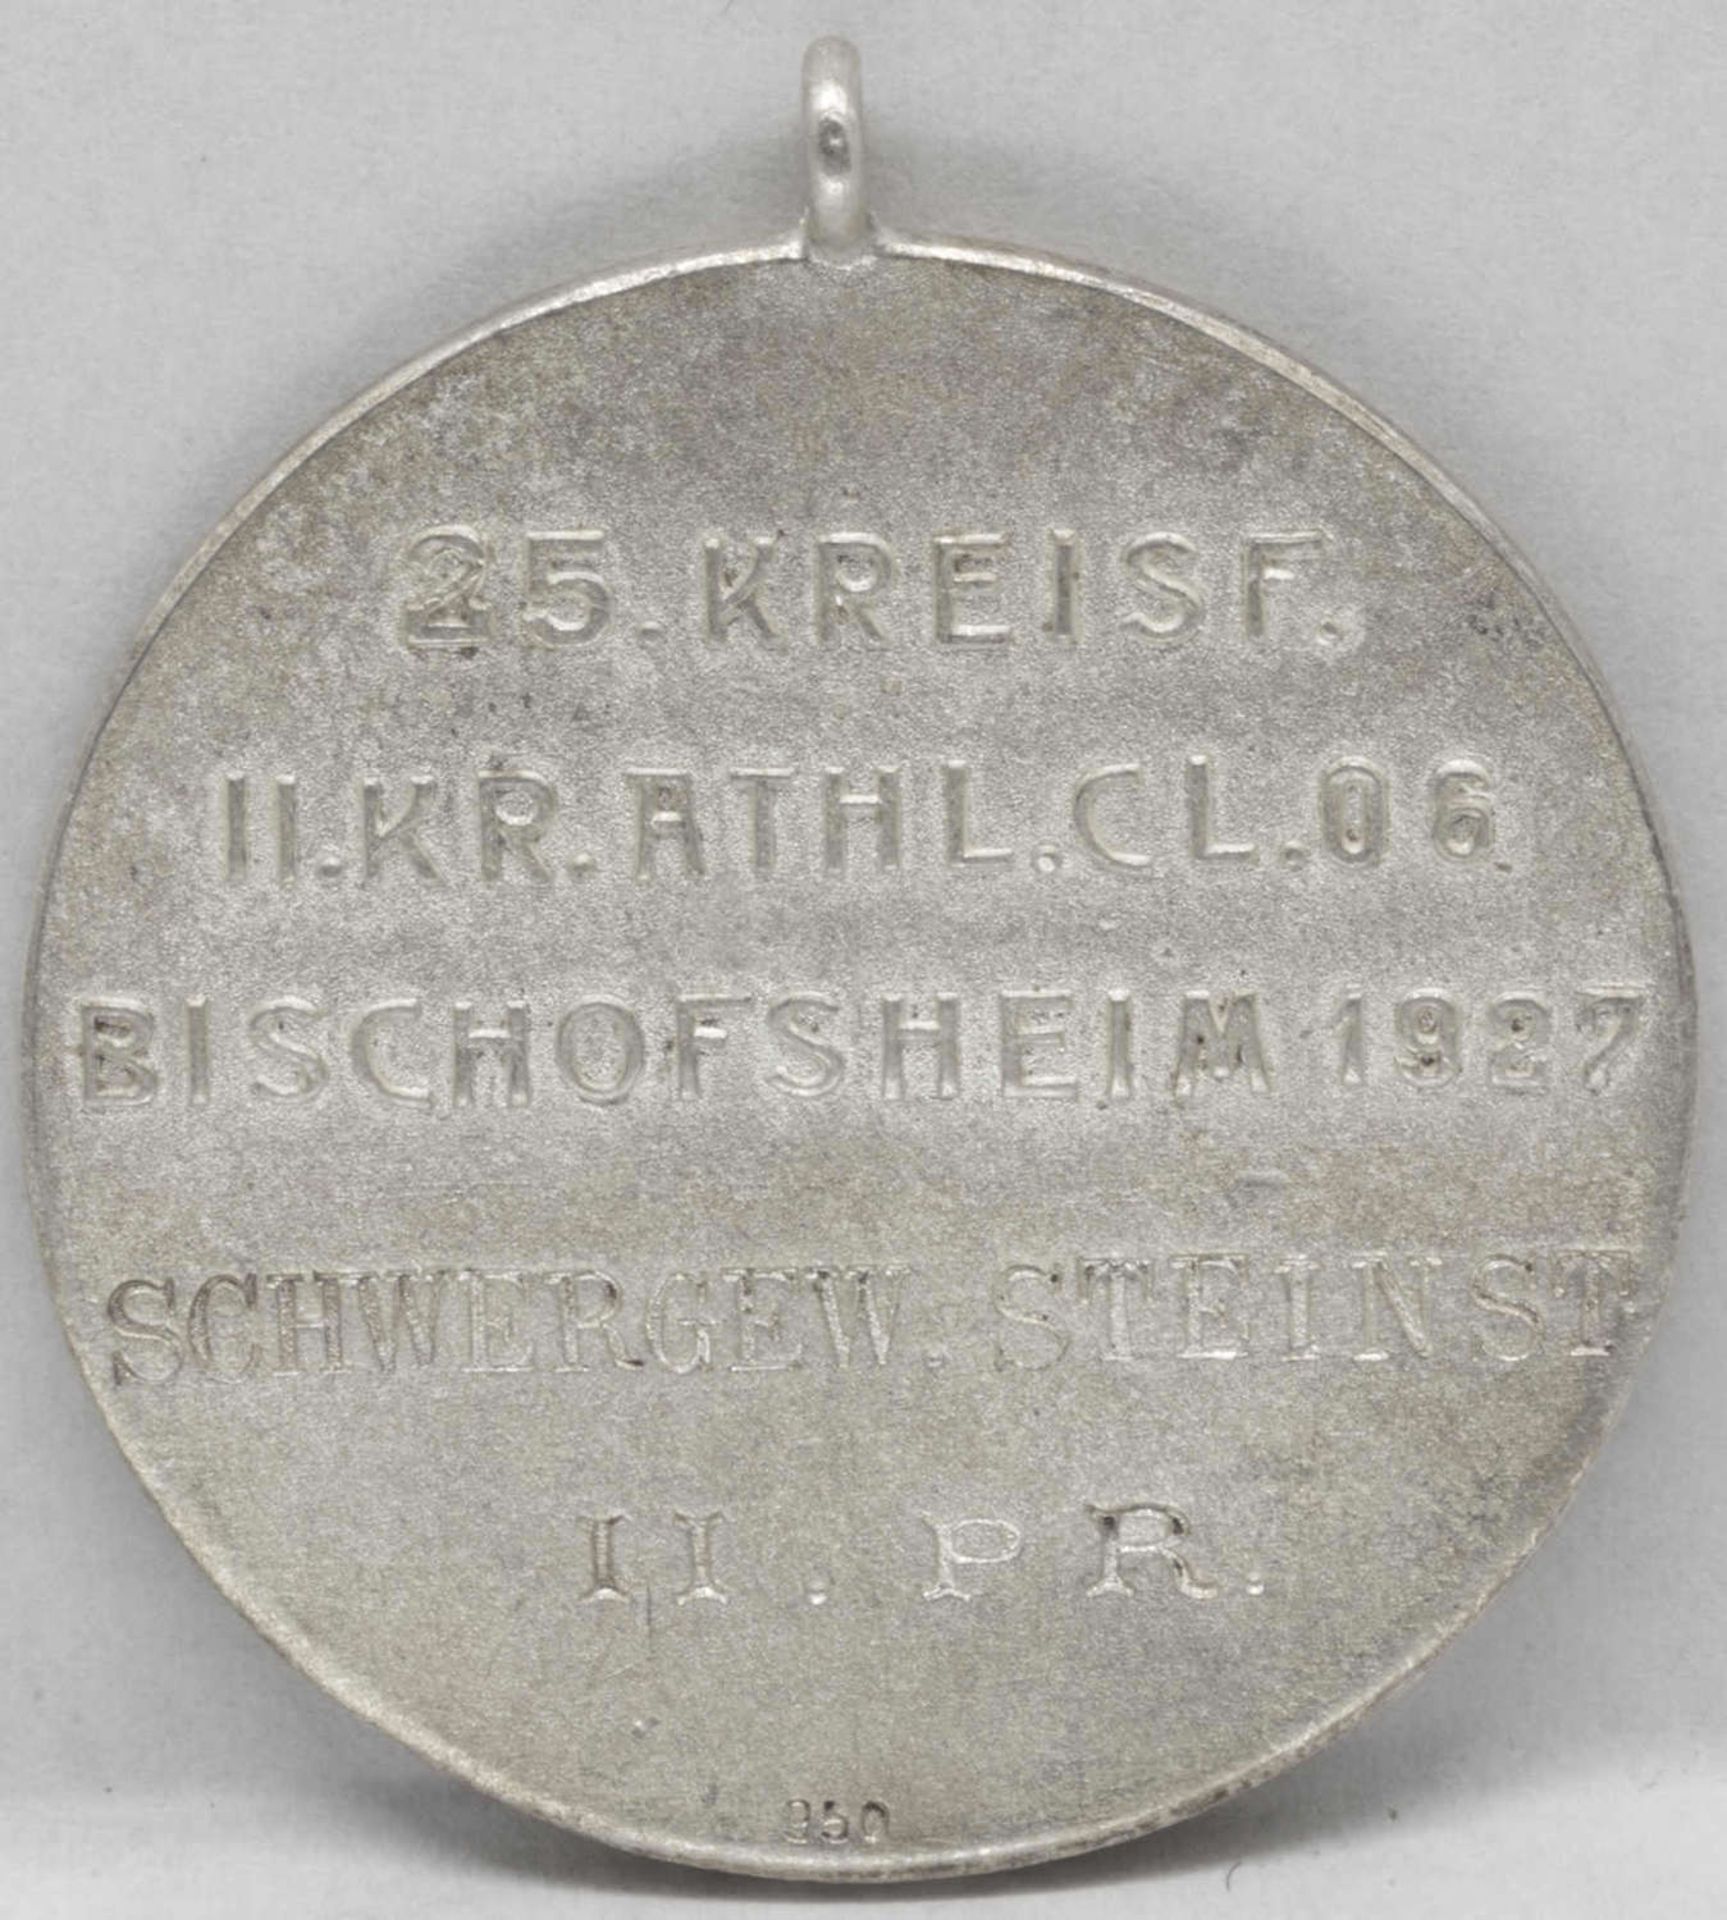 Tragbare Silbermedaille "25. Kreisf. II. Kr. Athl. Cl 06 Bischofsheim - Schwergew. Steinst. II. - Bild 2 aus 2